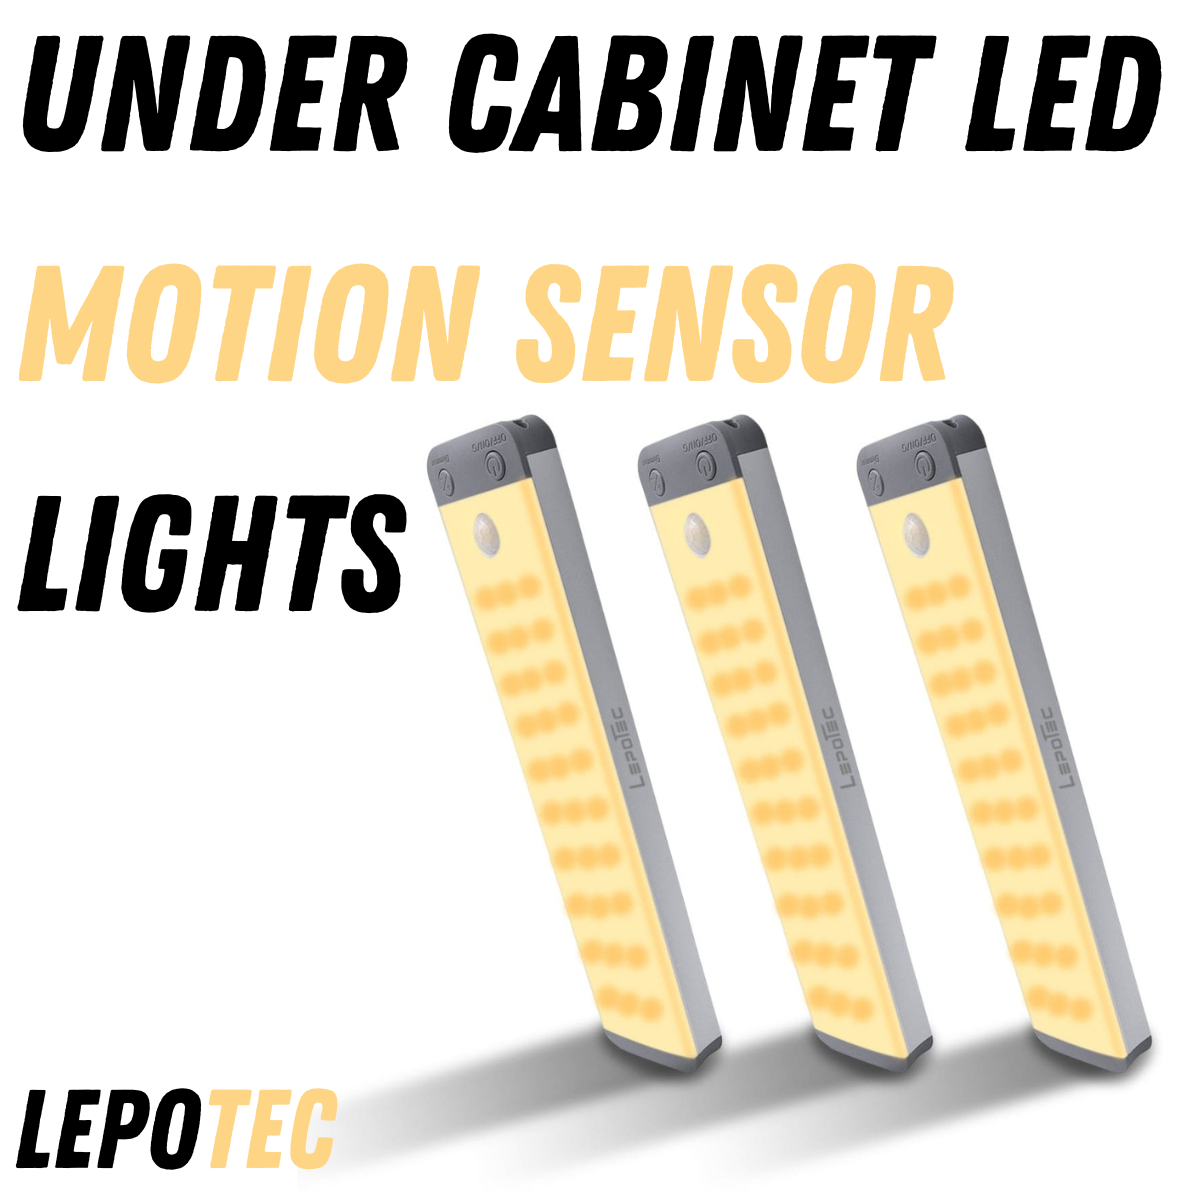 Under cabinet led motion sensor lights